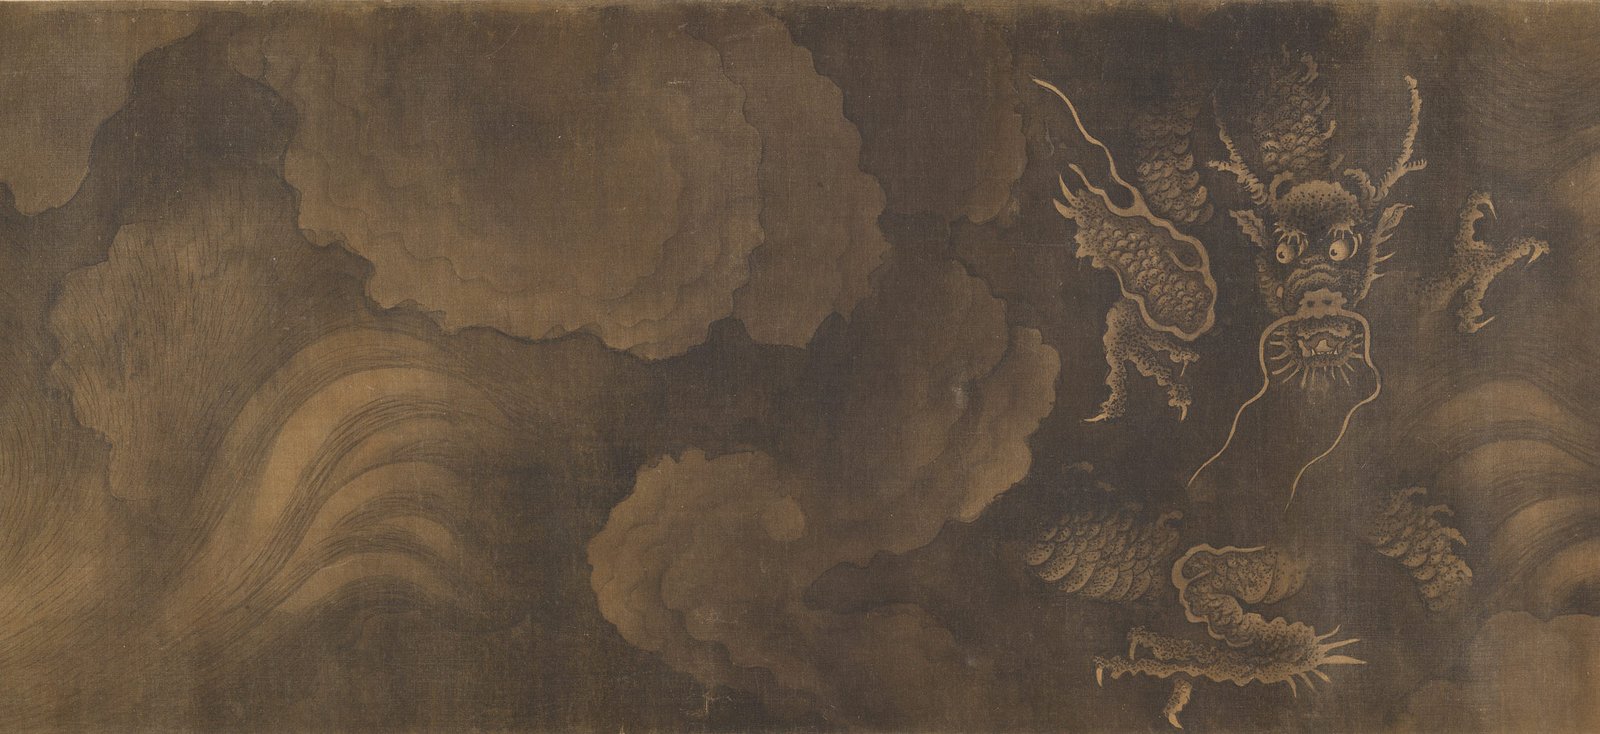 Pluie bienfaisante, encre sur soie de Zhang Yucai (- 1316)